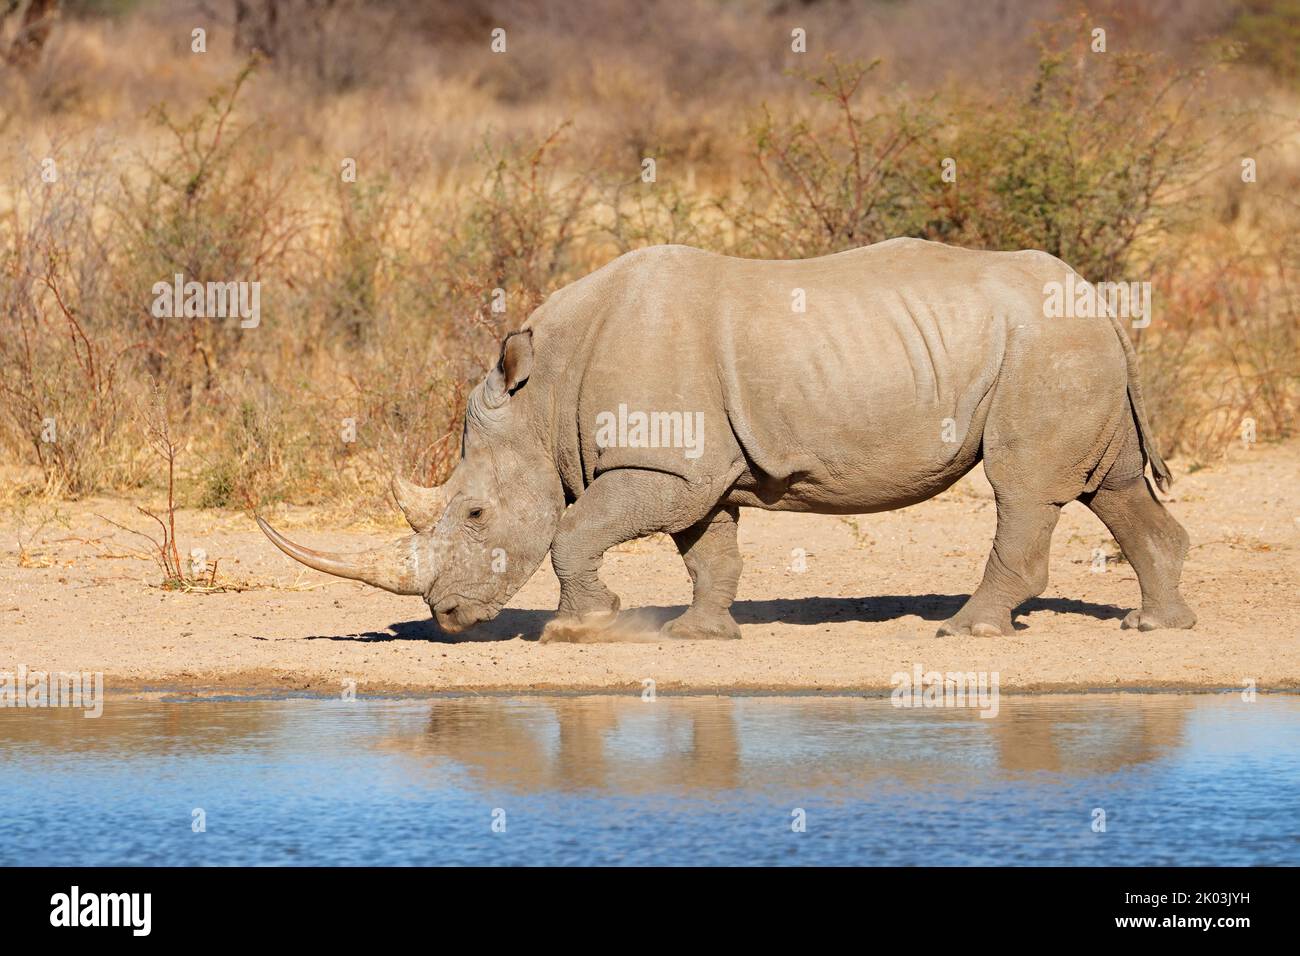 Un rinoceronte blanco (Ceratotherium simum) en un abrevadero, Sudáfrica Foto de stock